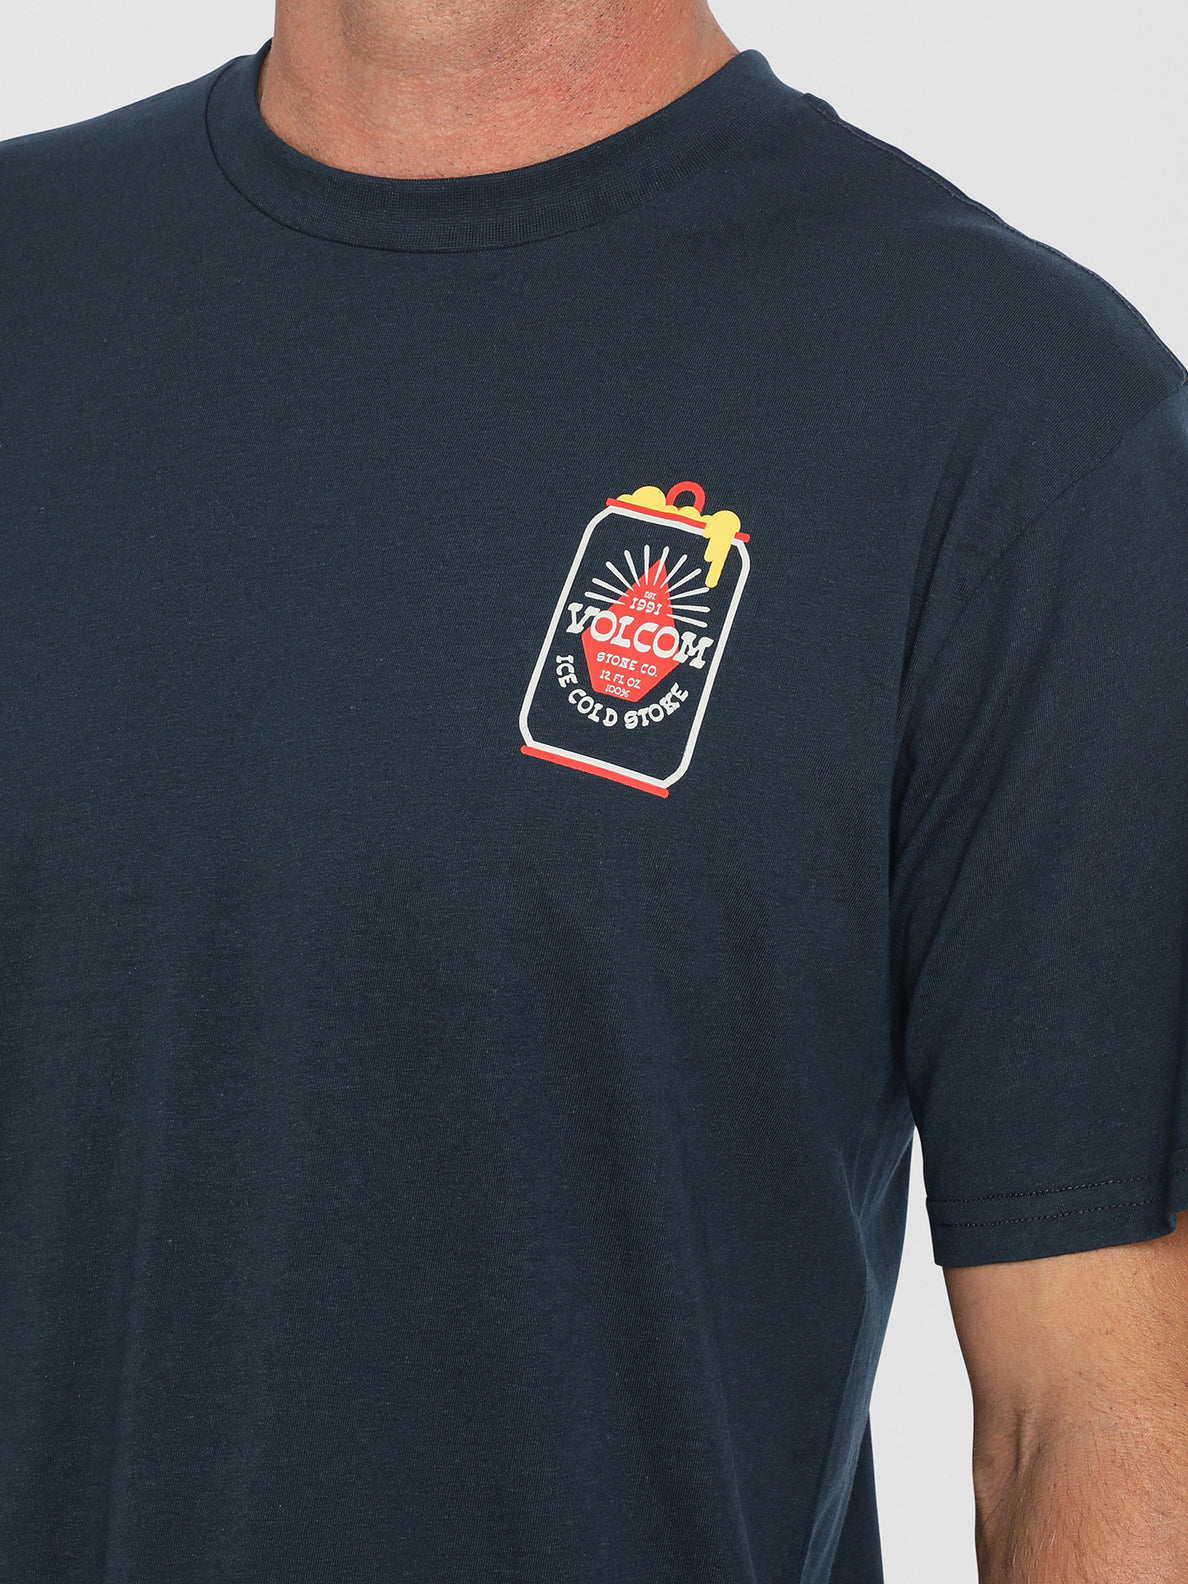 Frostynation Short Sleeve T-Shirt - Navy